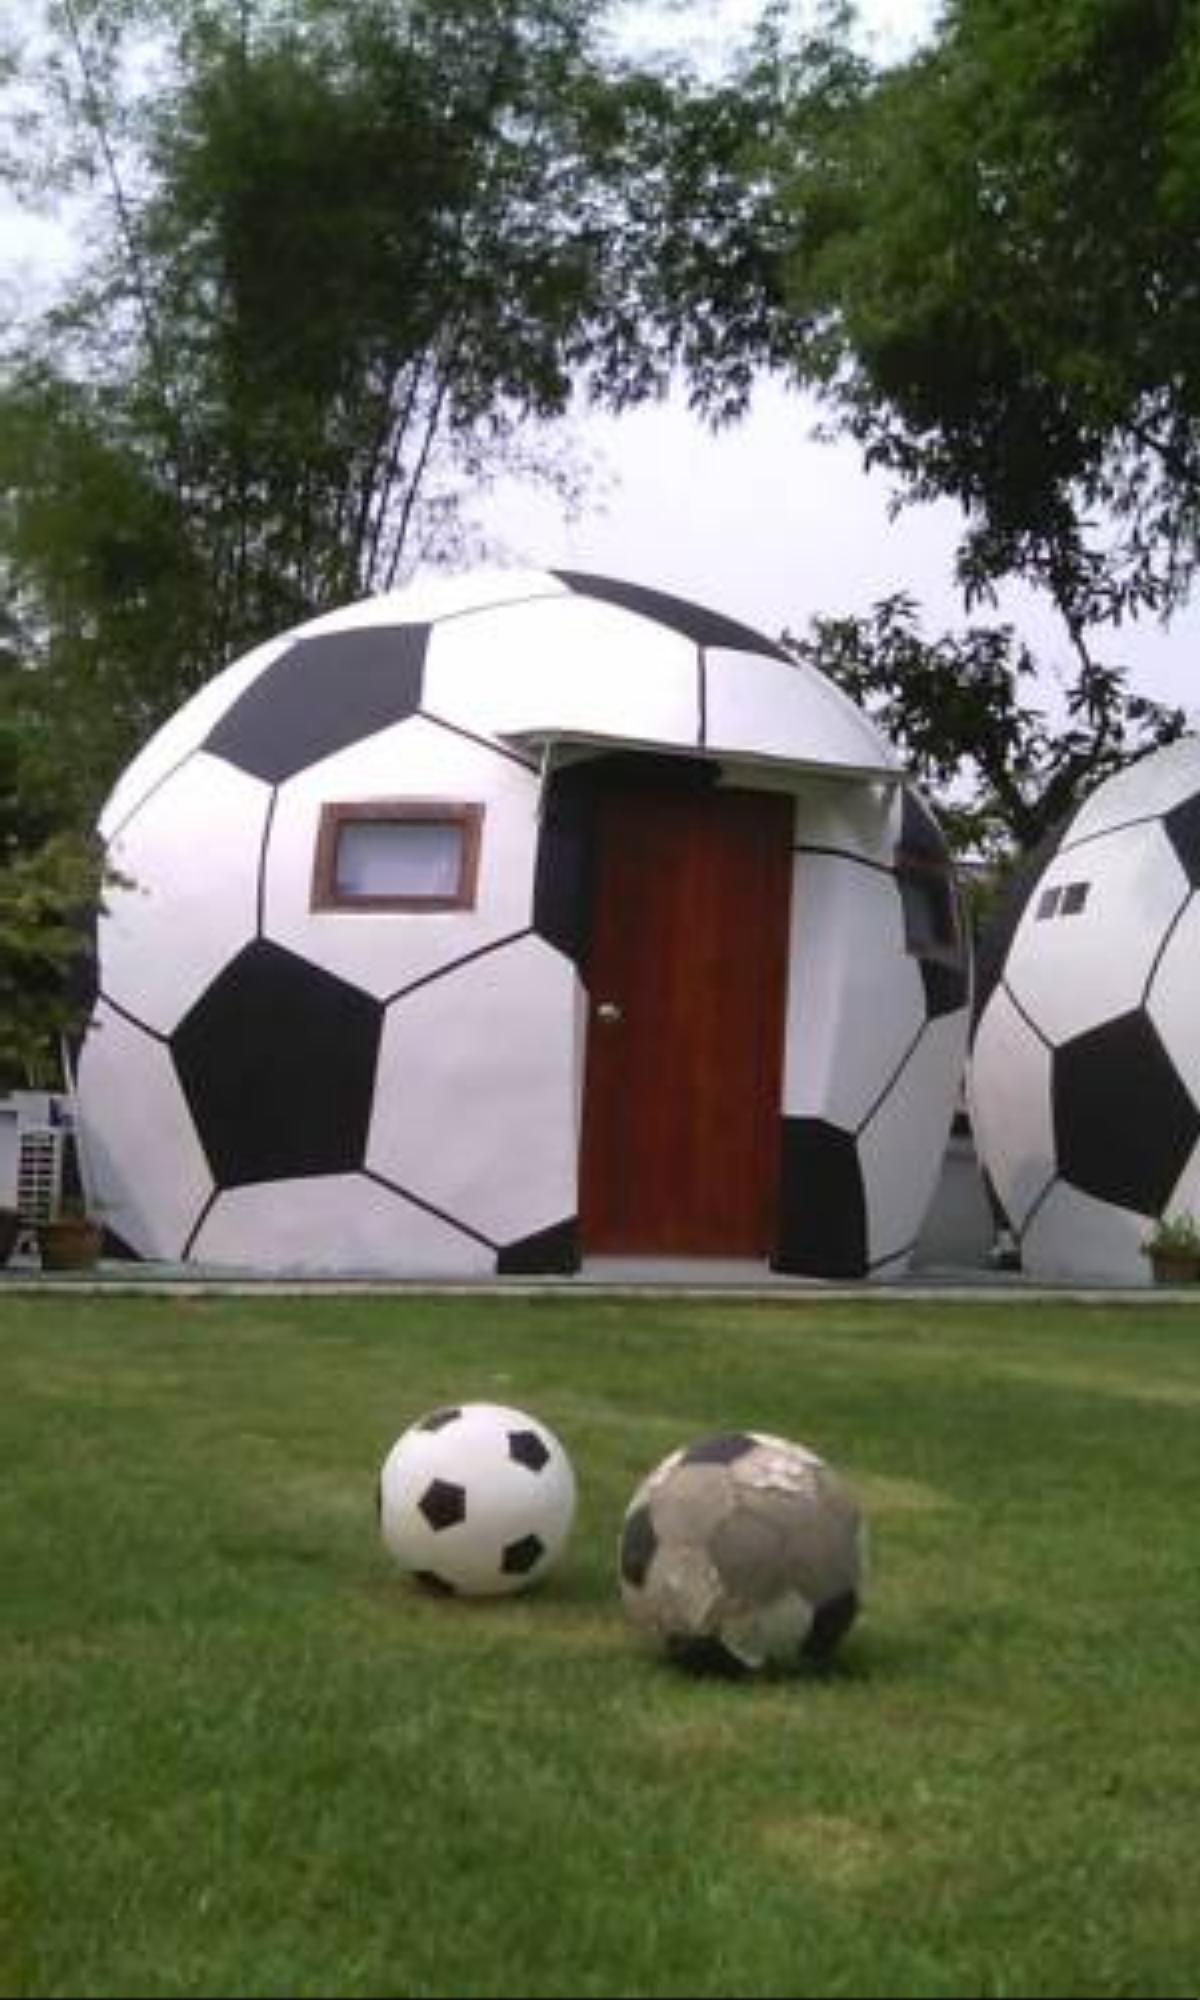 The Football House